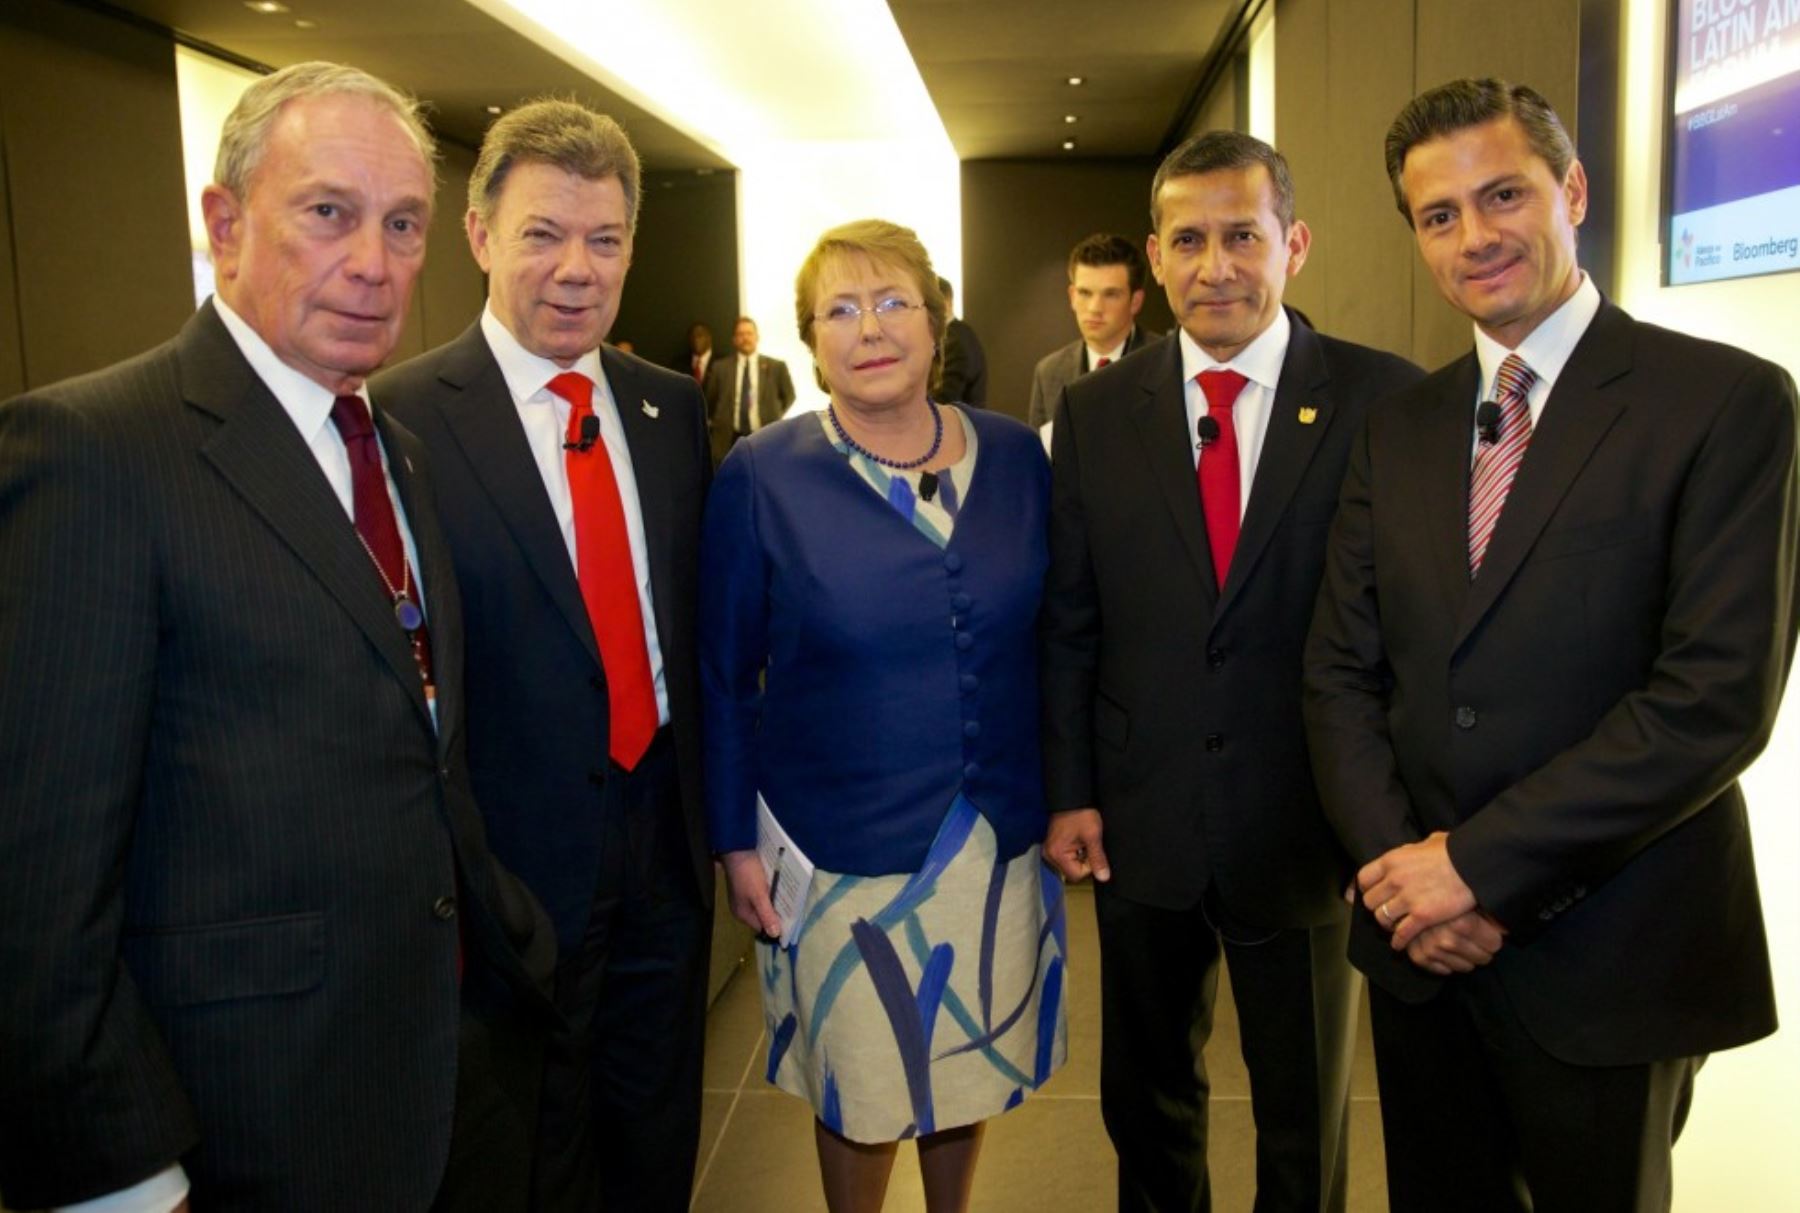 Presidente Ollanta Humala participó en el Primer Foro sobre Latinoamérica con los mandatarios de la “Alianza del Pacífico”.